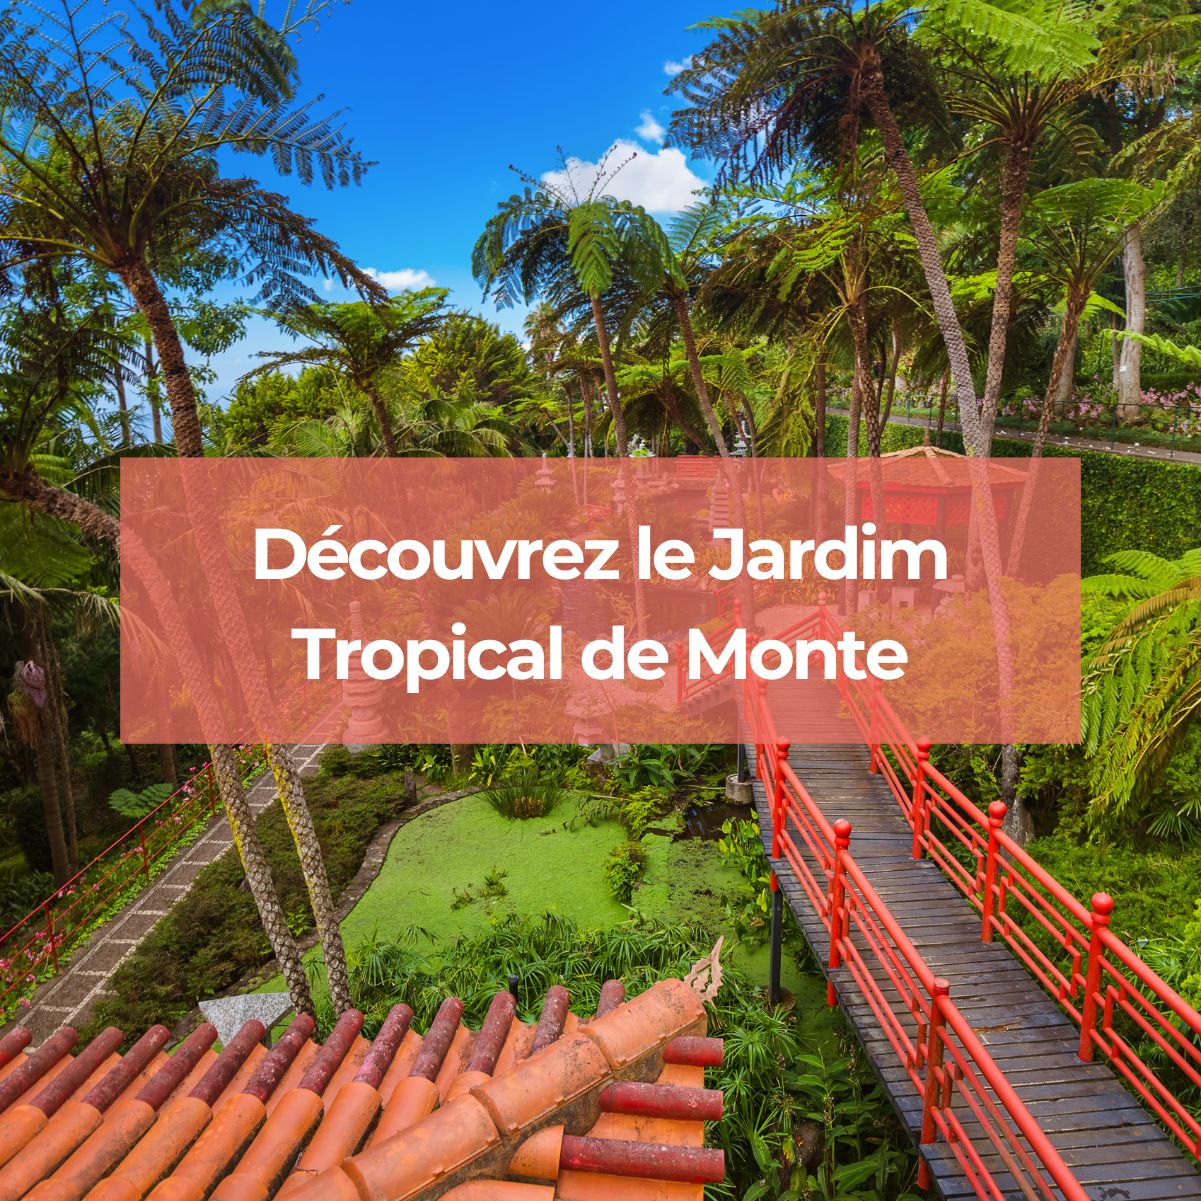 Le Jardim Tropical de Monte est un lieu incontournable que vous devez visiter lors de vos vacances au Portugal.